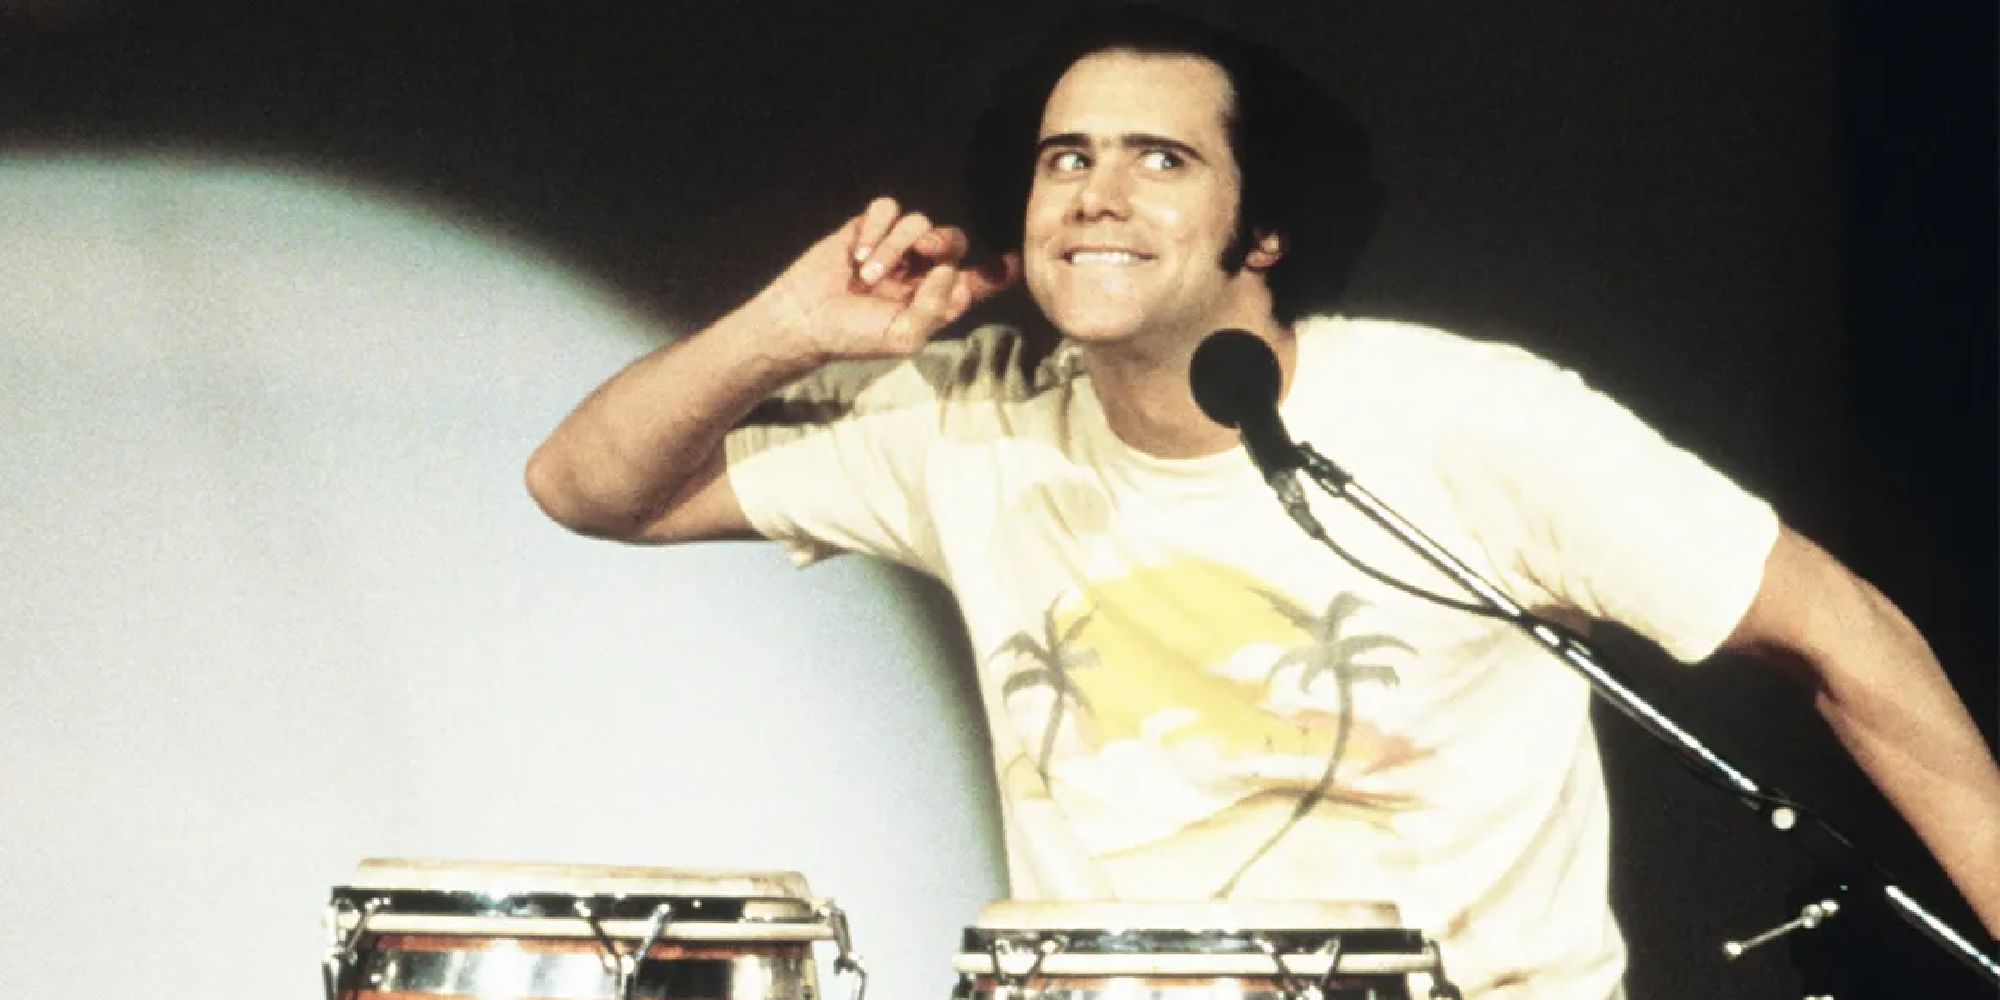 Jim Carrey as Andy Kaufman playing bongos